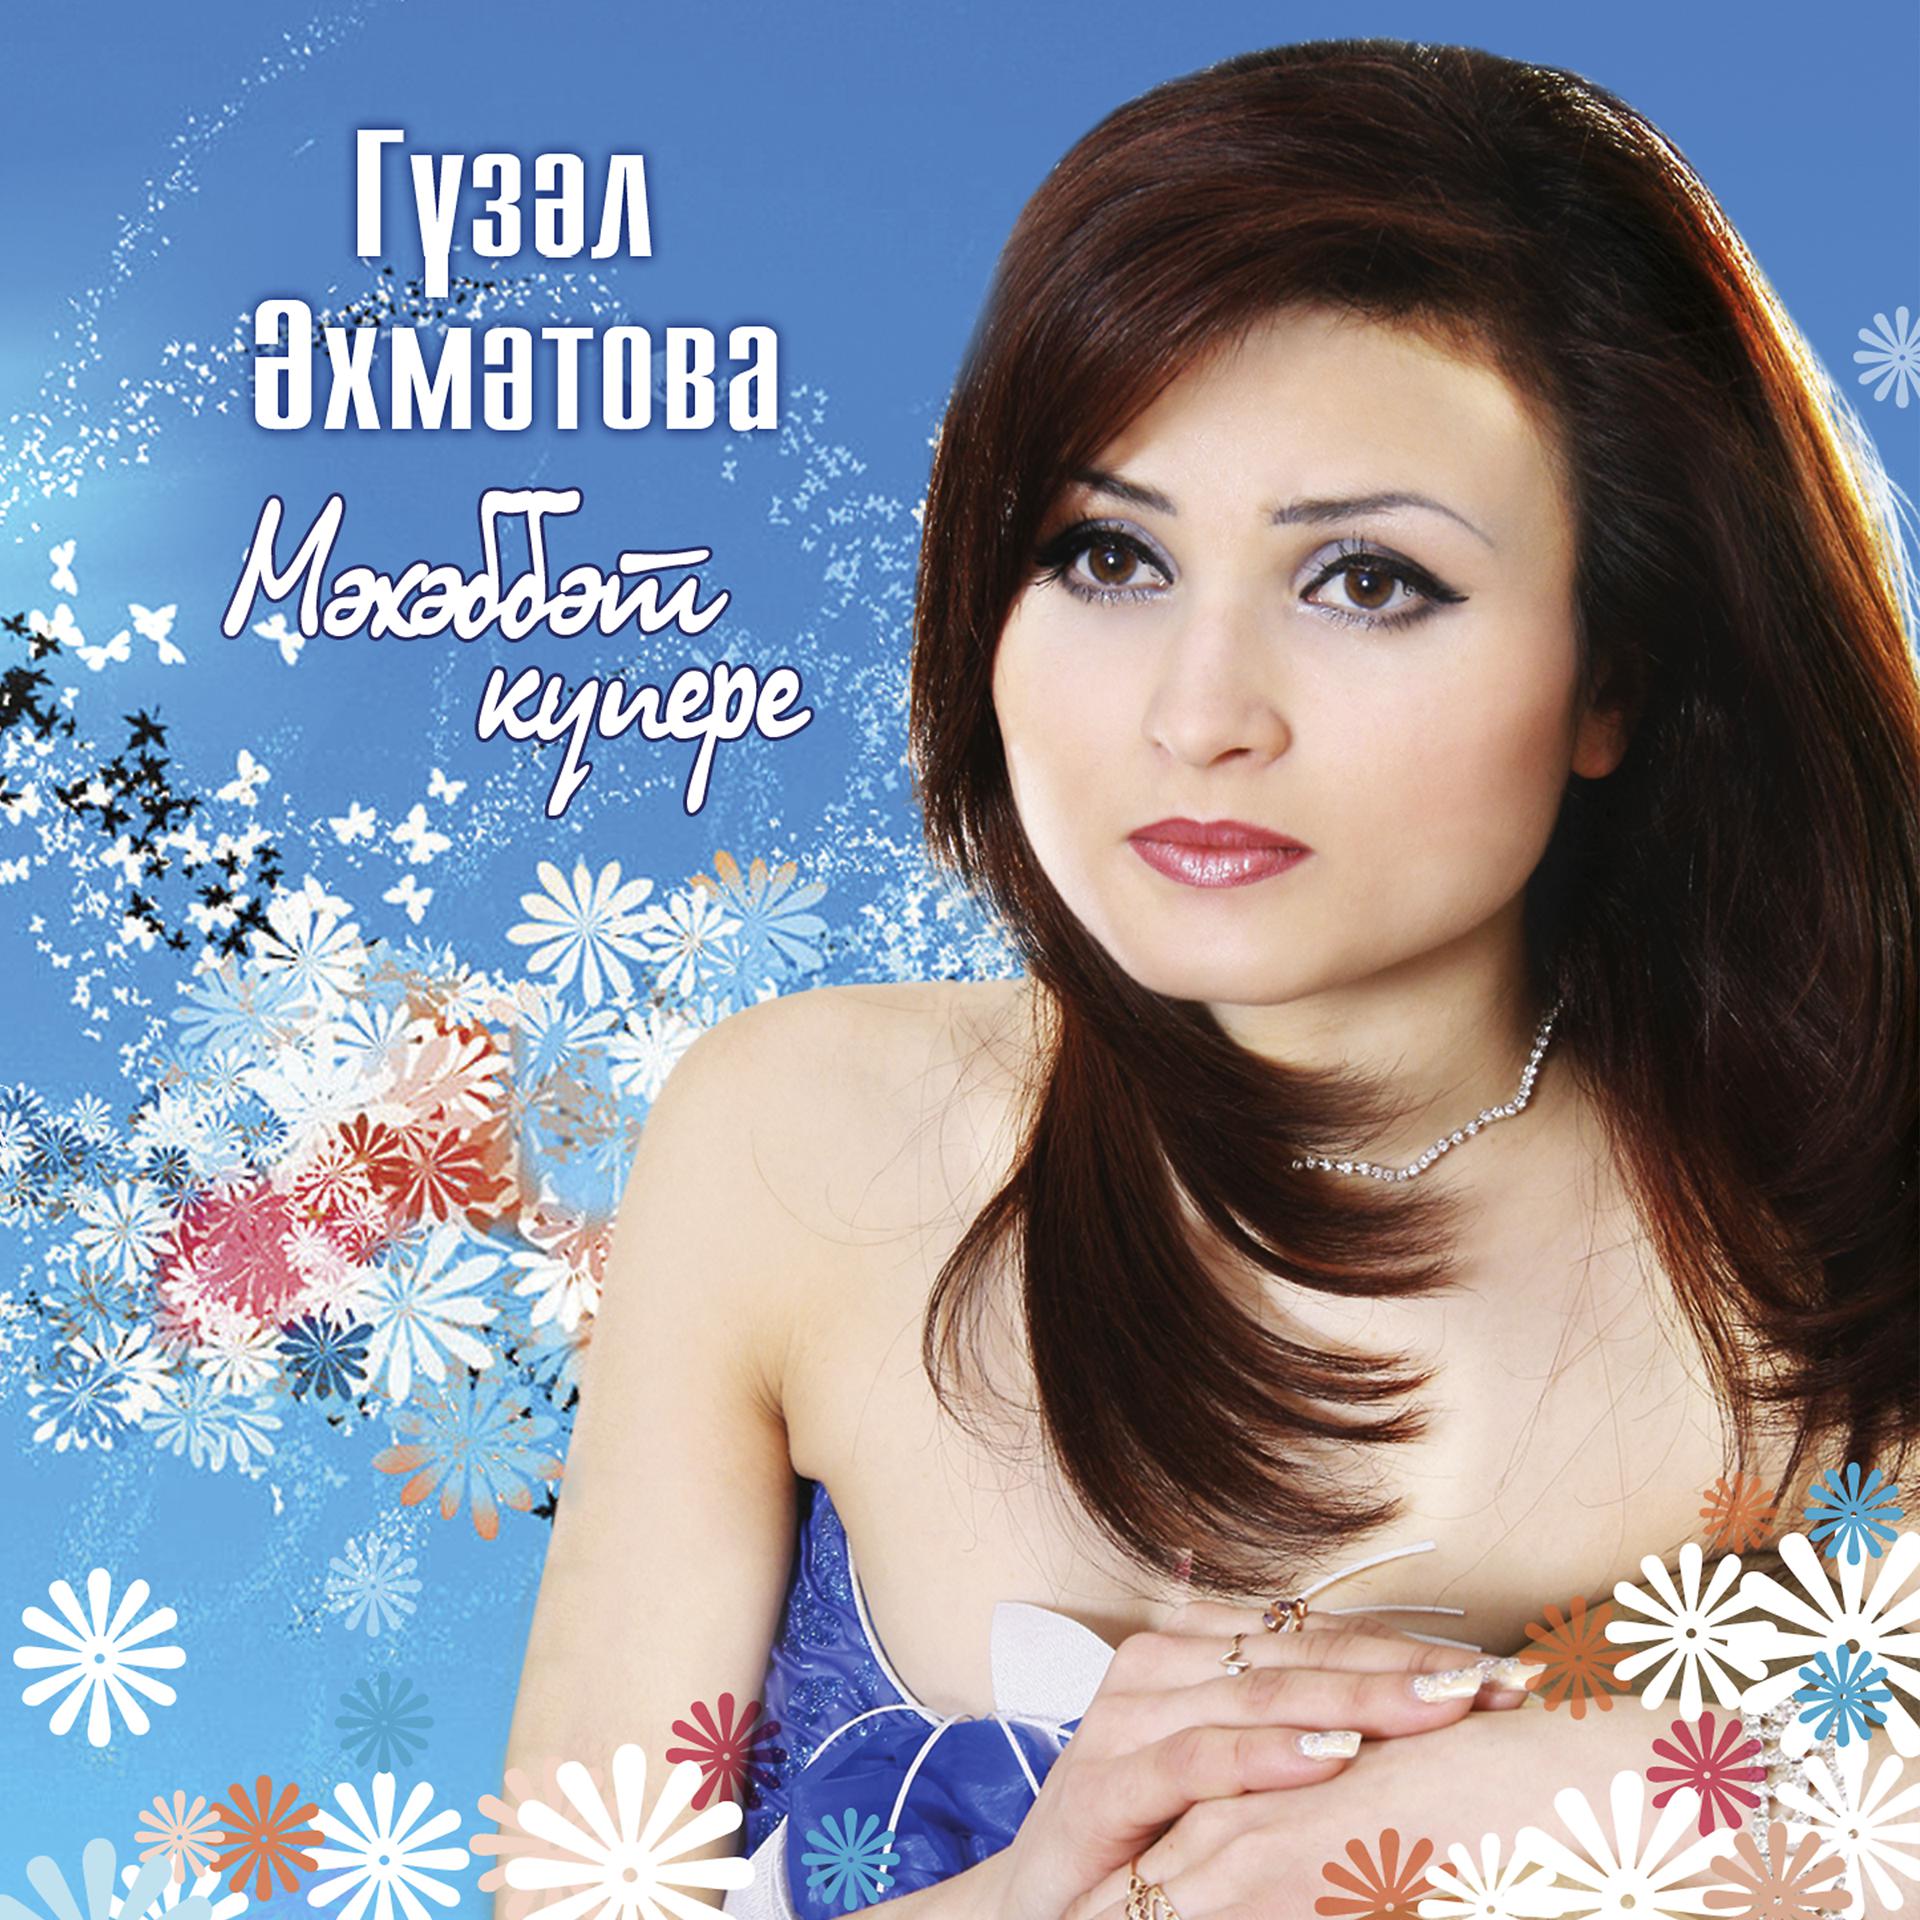 Татарские песни альбом